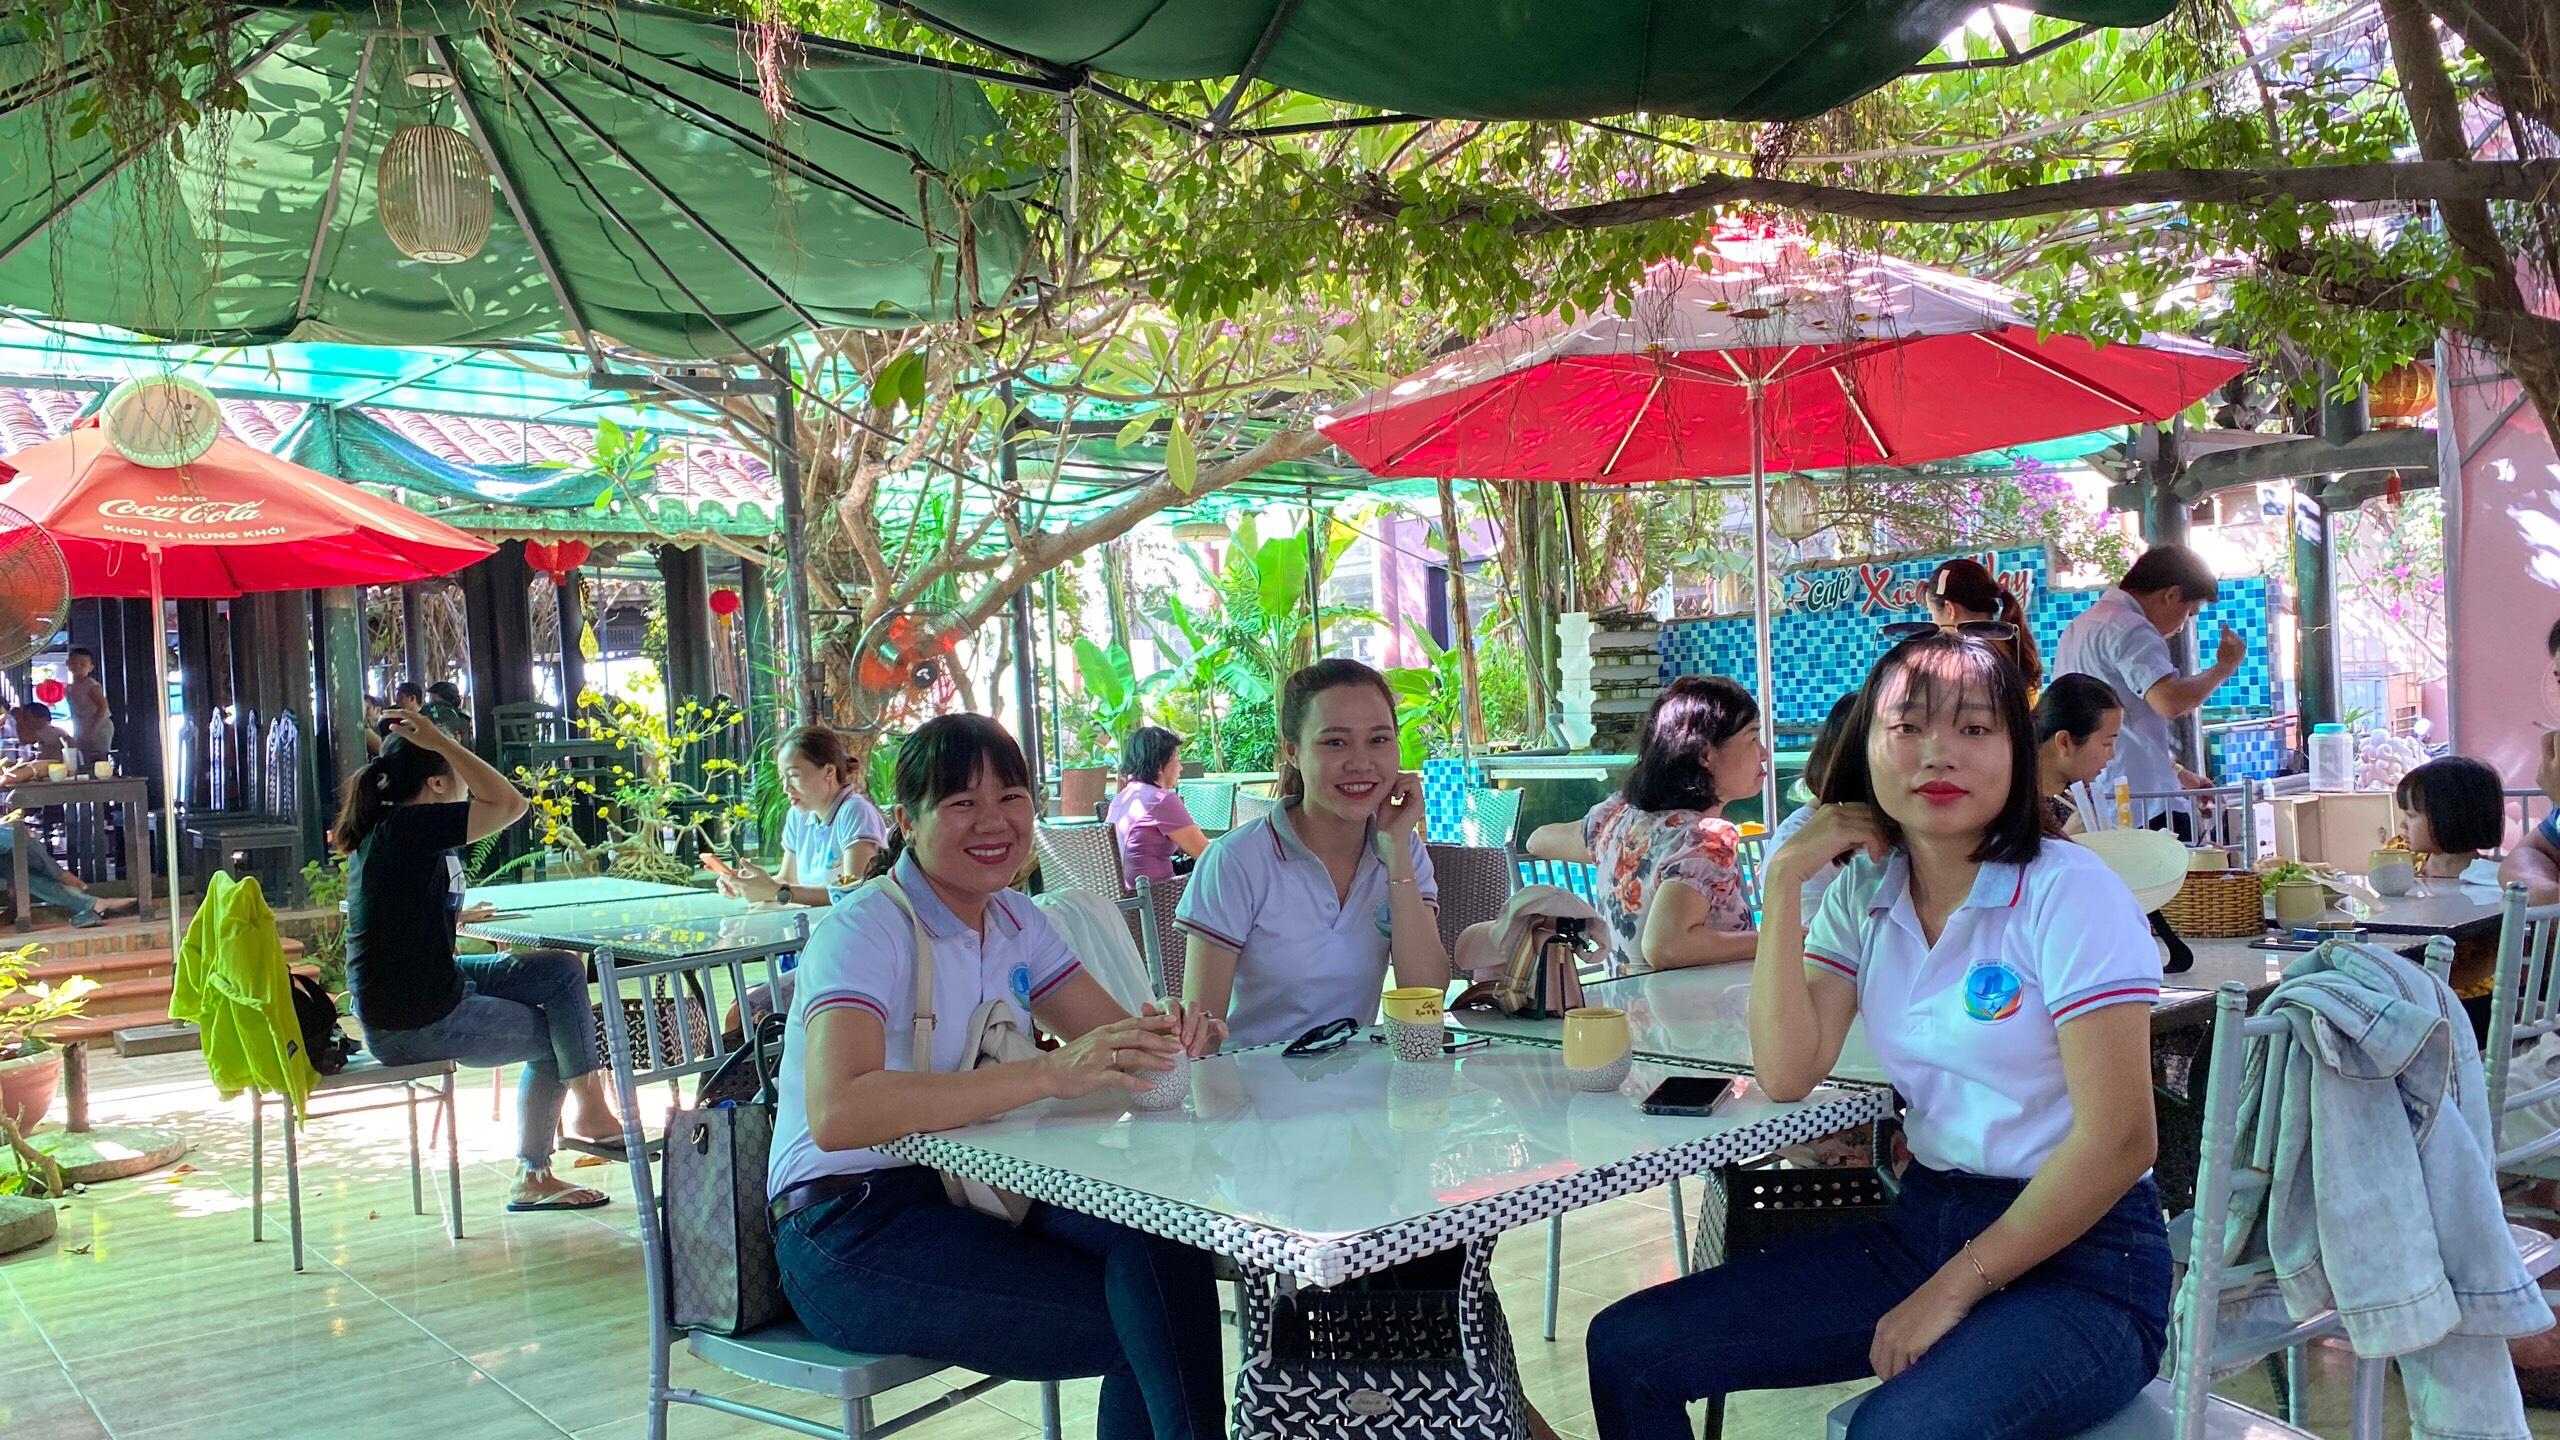 Hành trình khám phá Vũng Bồi – Đề Gi cùng Hiệp hội Du lịch tỉnh Bình Định